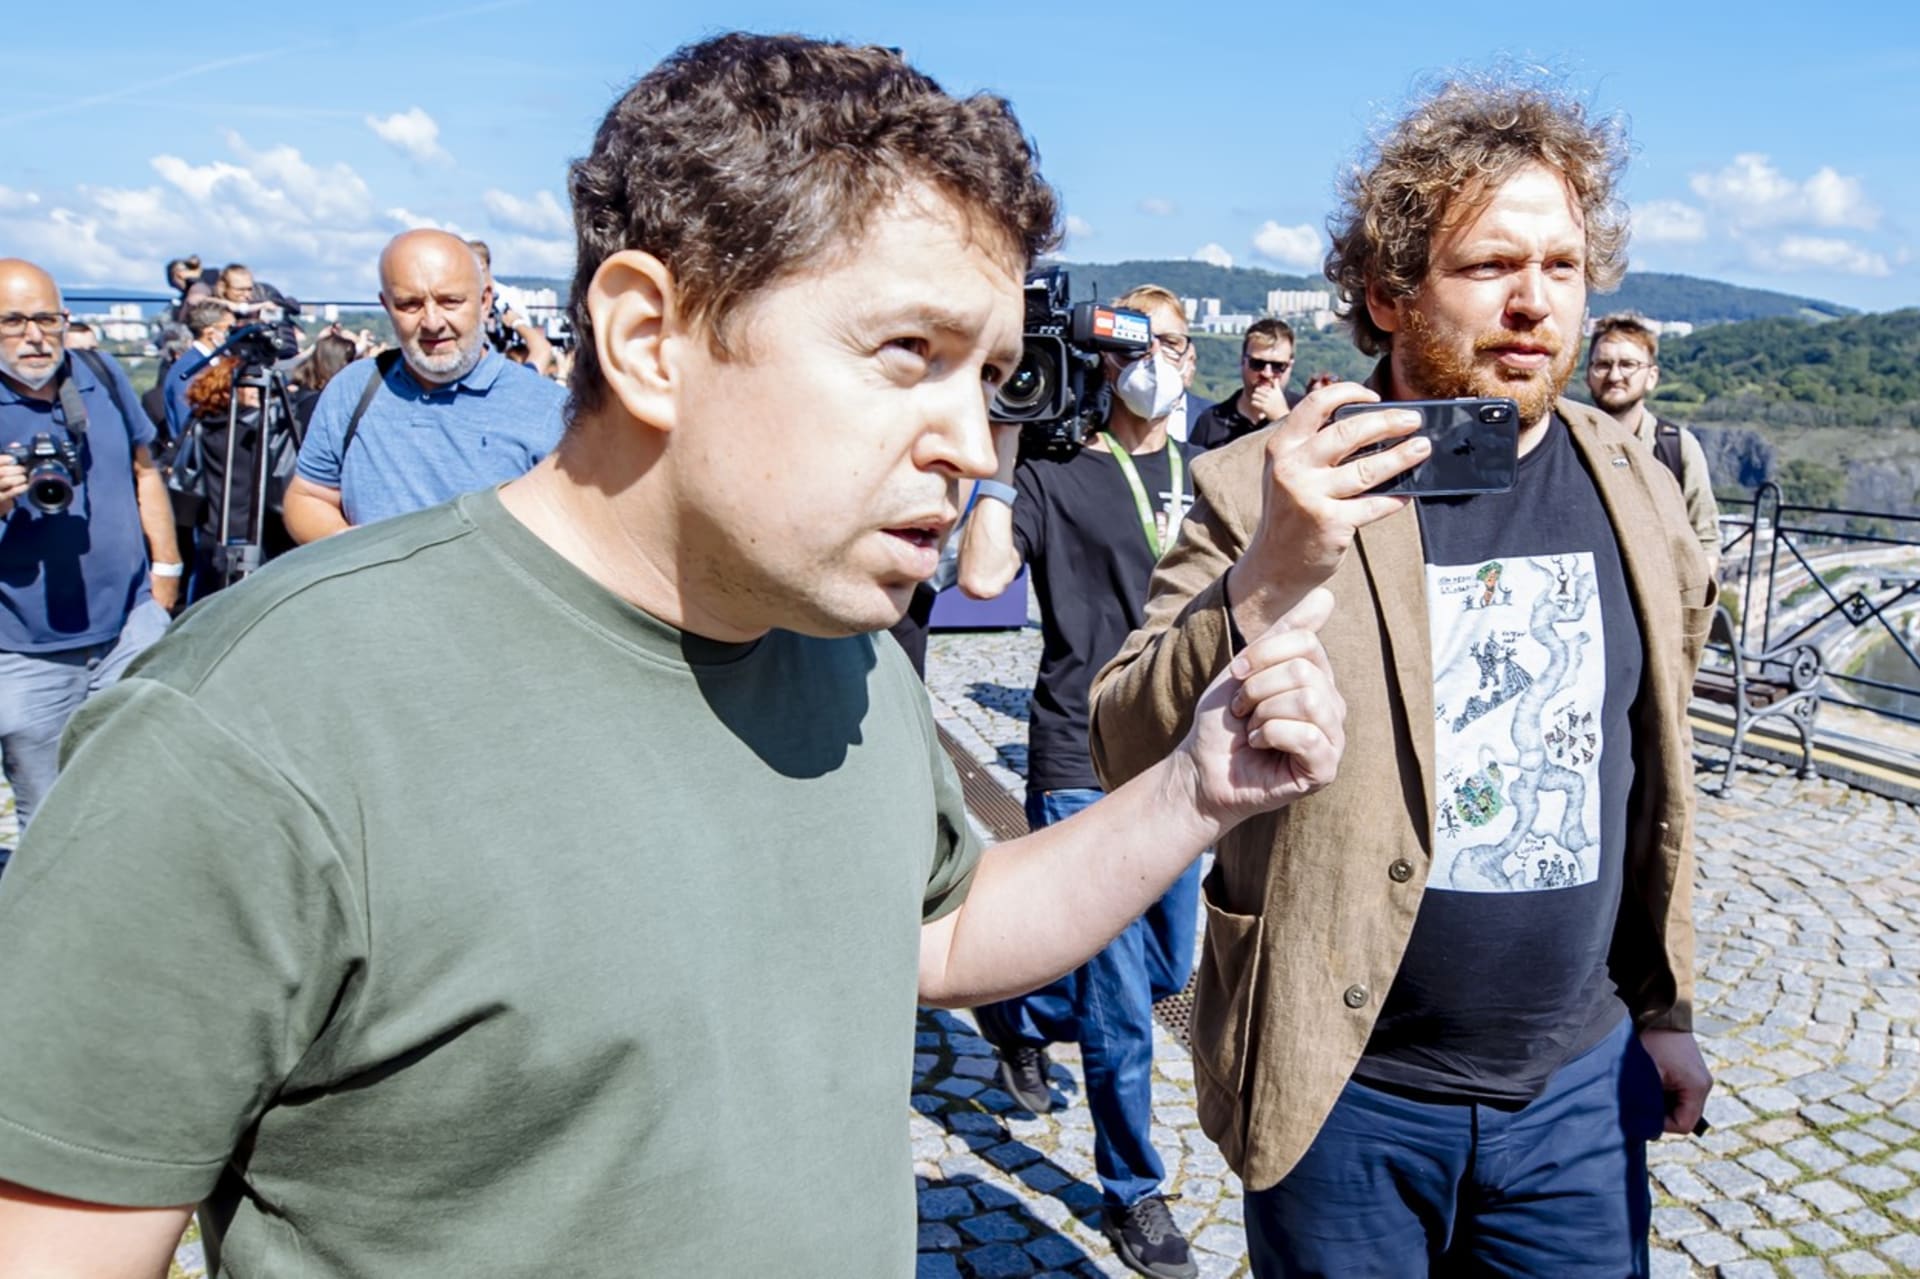 Režisér Vít Klusák (vpravo) podle komentátora Bohumila Pečinky manipuluje syna premiéra Andreje Babiše.